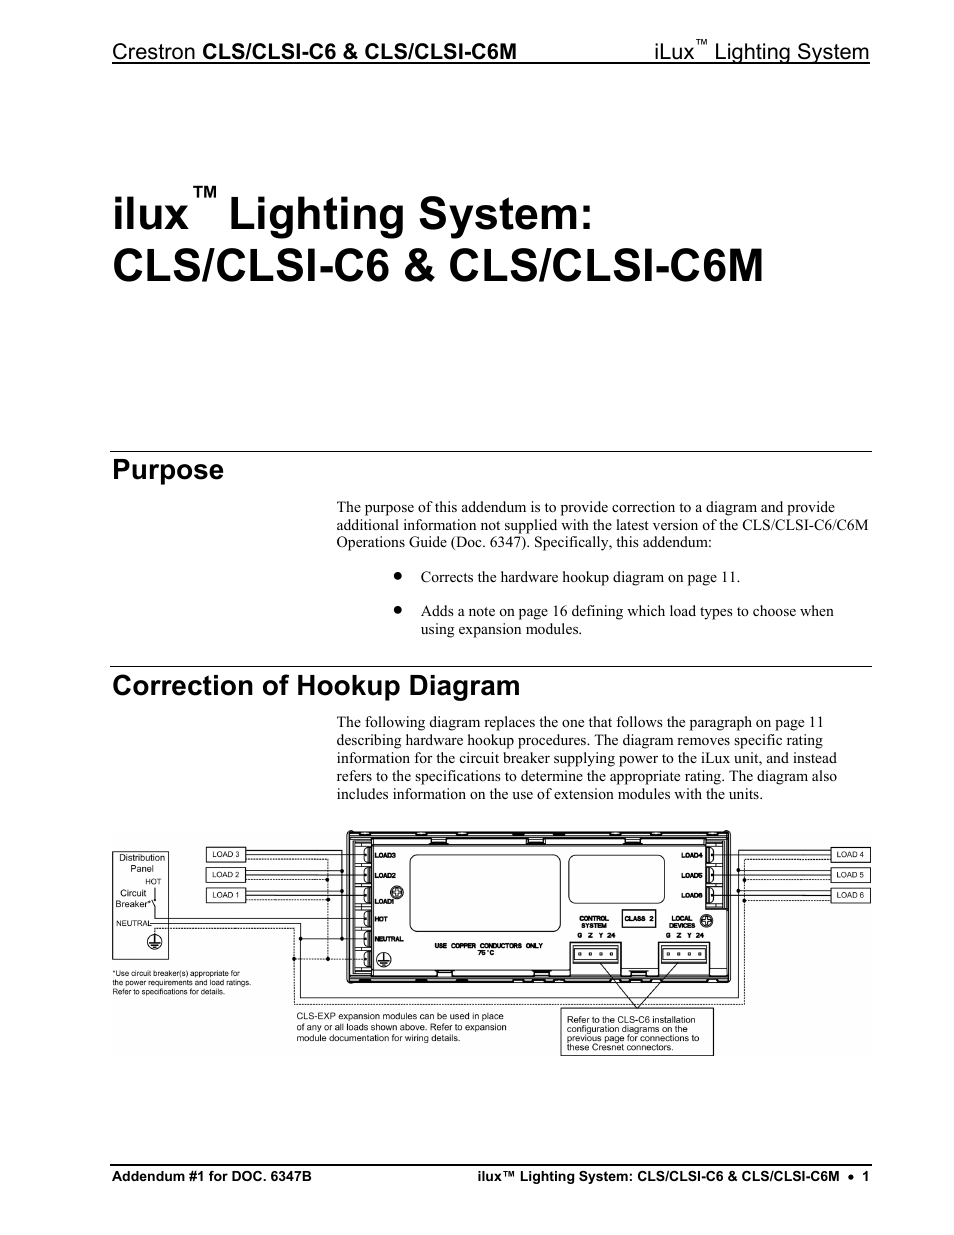 iLux CLSI-C6